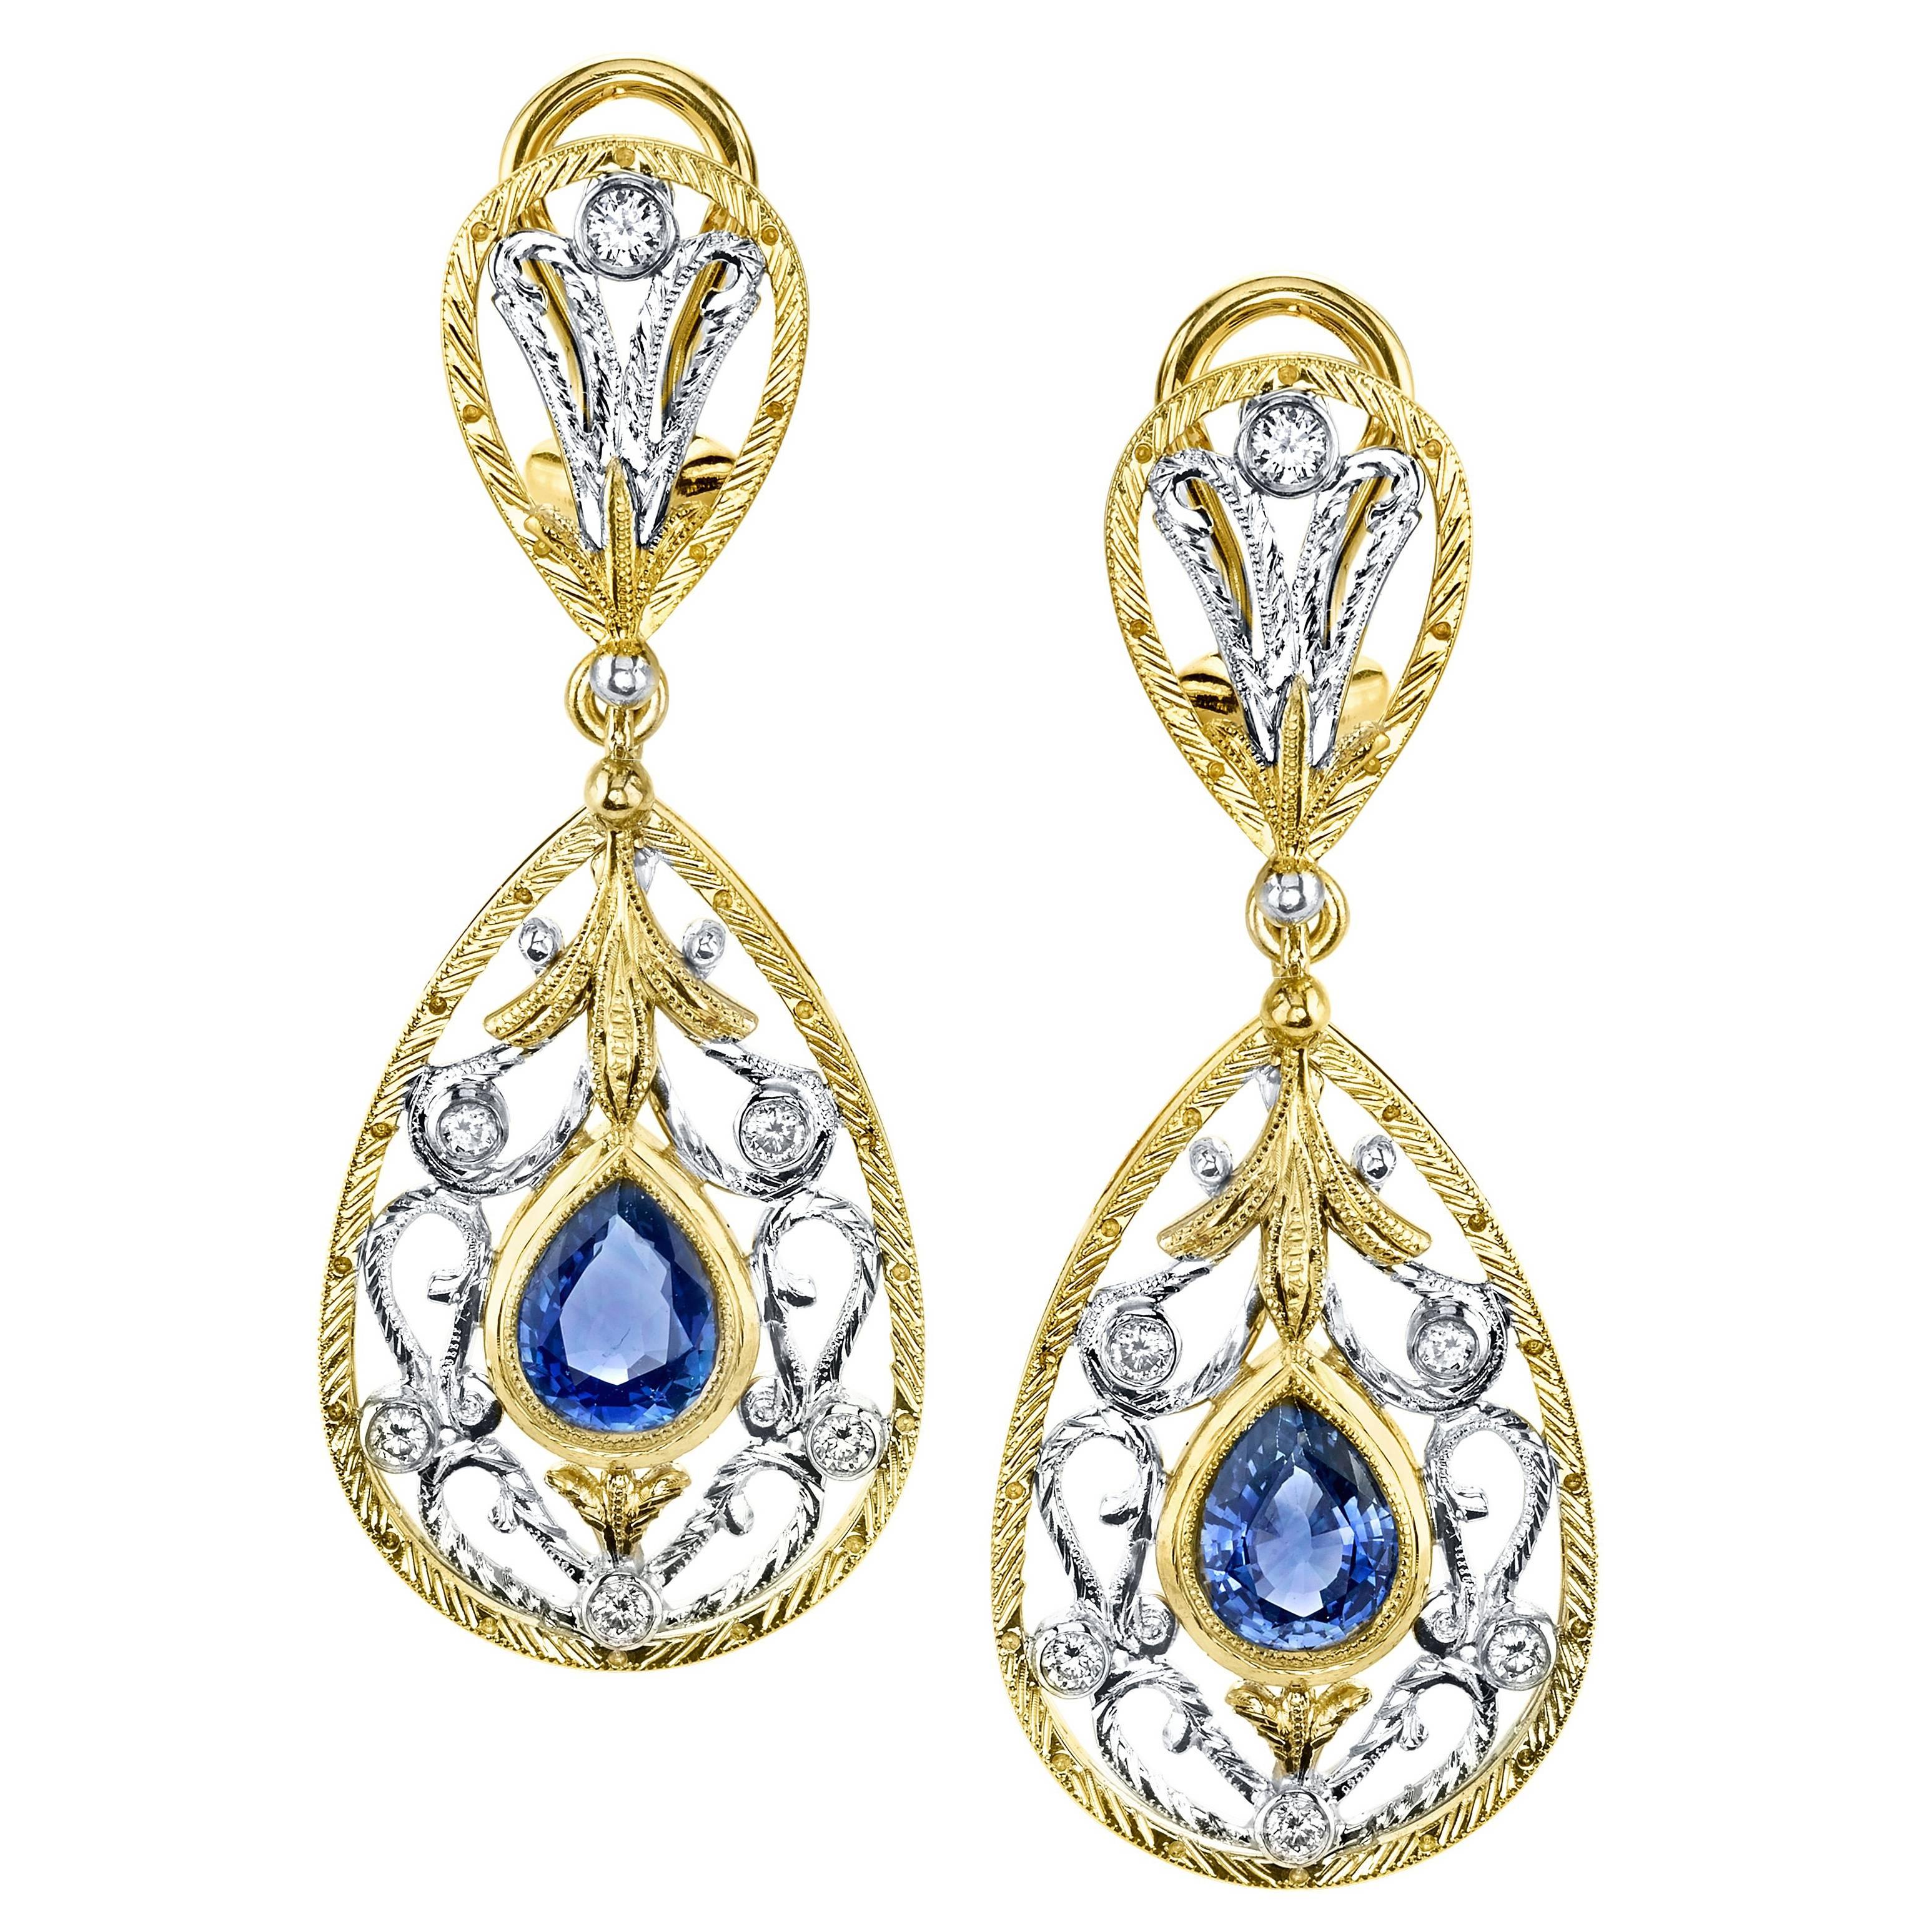 Diese aufwendig gestalteten und handgefertigten Ohrhänger zeigen wunderschön aufeinander abgestimmte birnenförmige königsblaue Saphire, die mit funkelnden Diamanten in einem atemberaubenden und kunstvollen Design besetzt sind! Die Saphire sind in